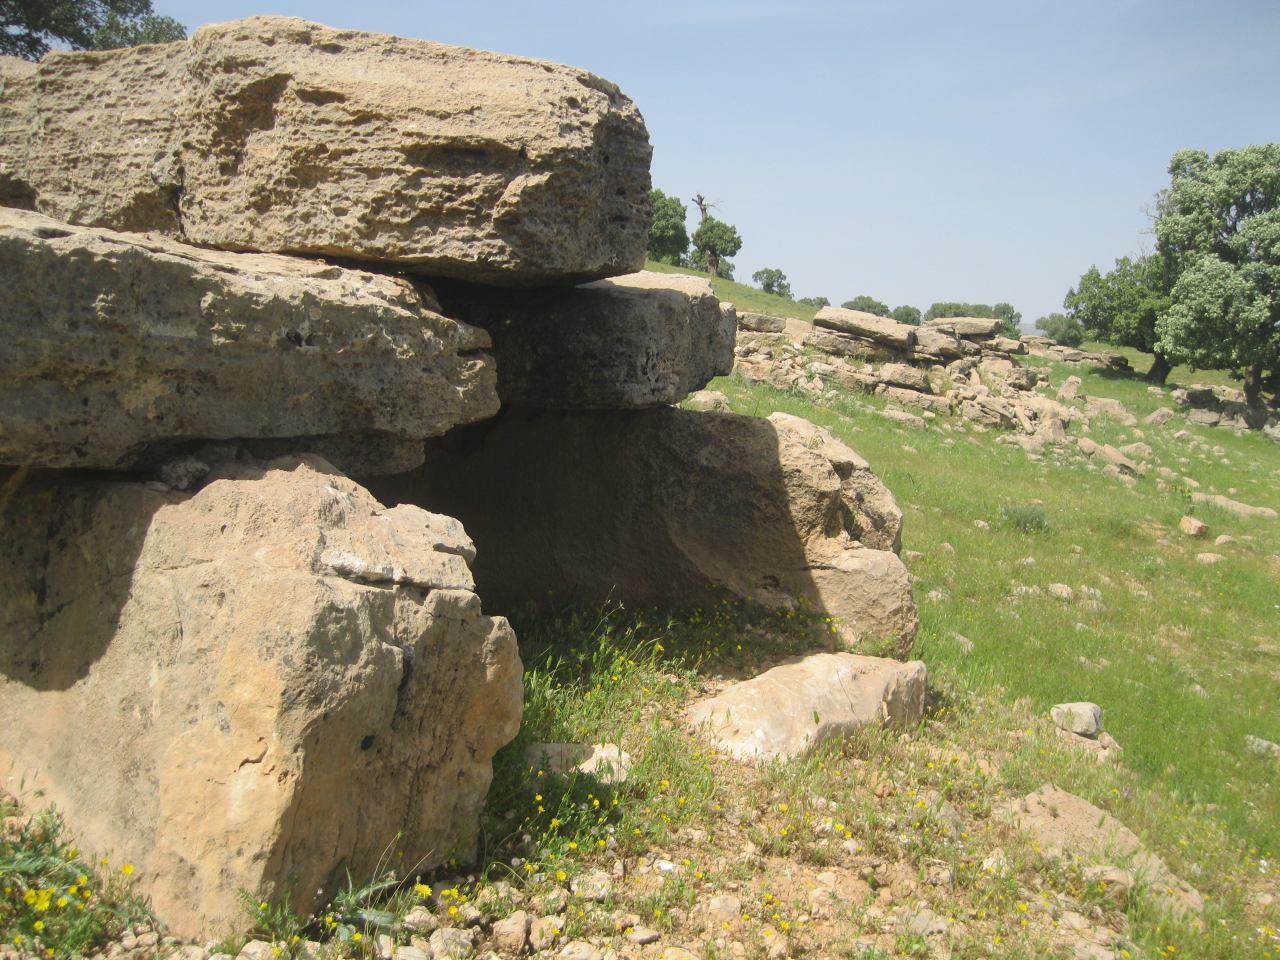 آهنگران قبرستانی باستانی در ایلام